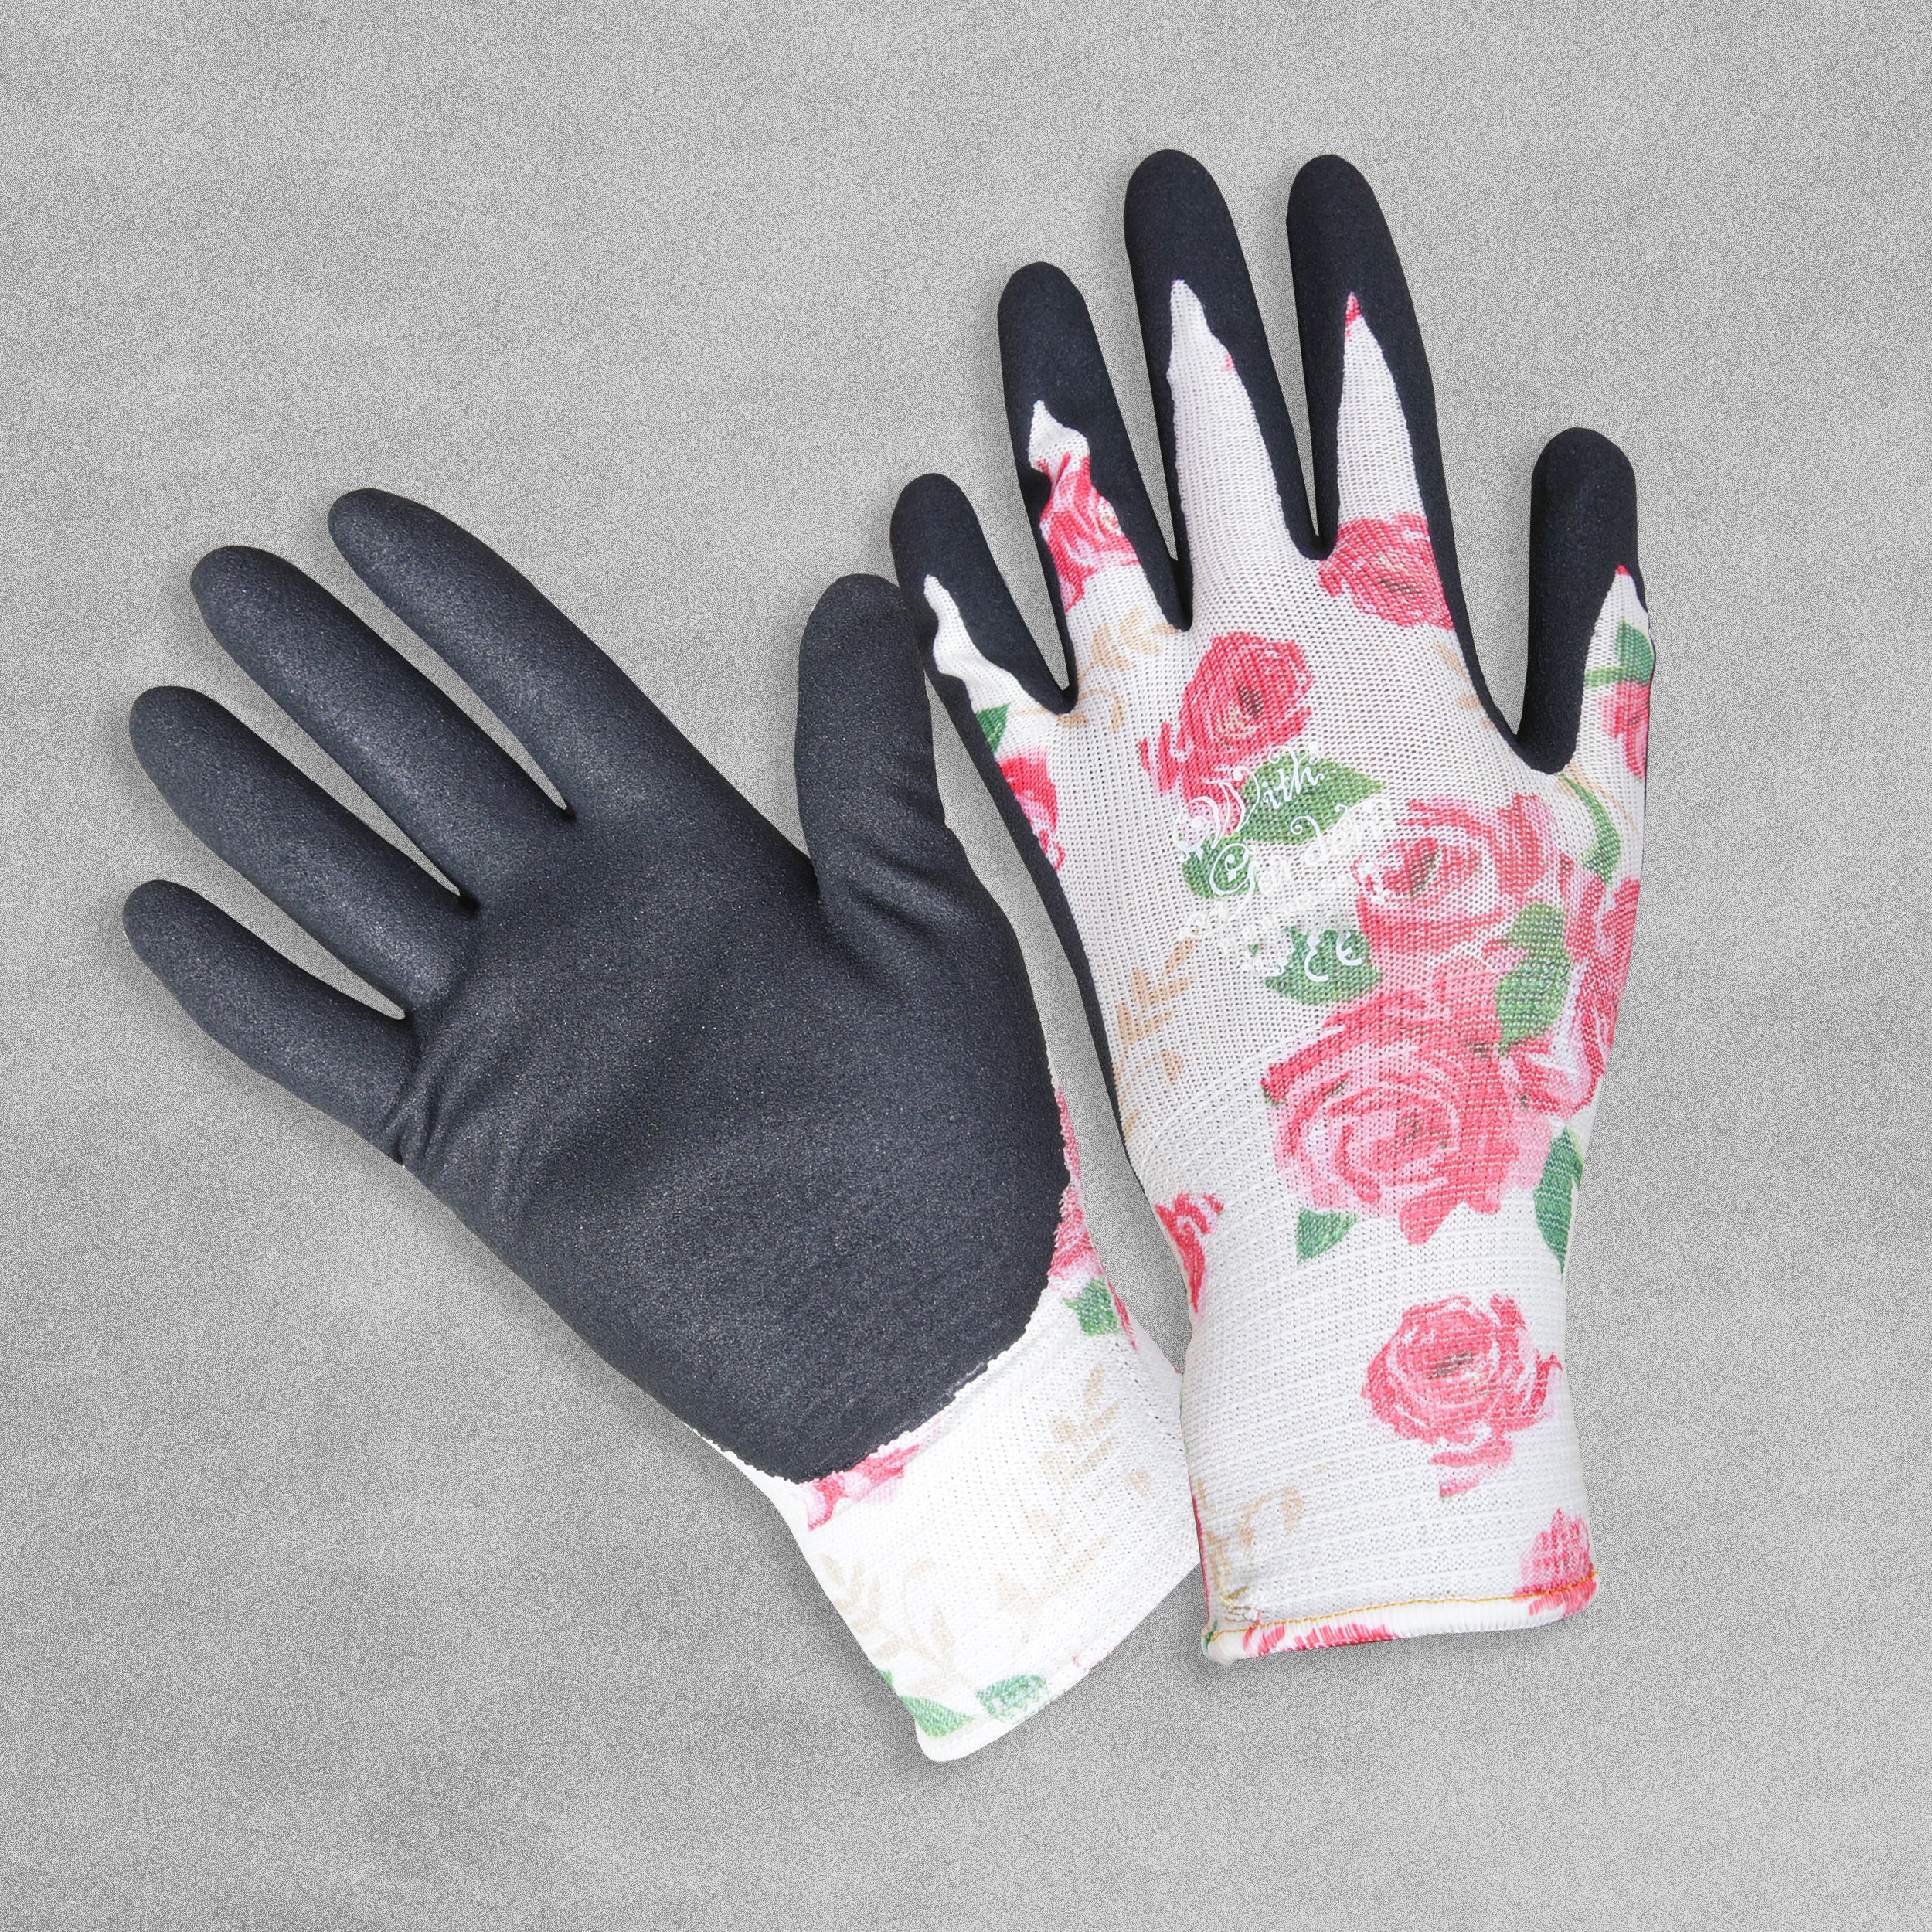 With Garden Premium Luminus Garden gloves - Rose design with black nitrile palm